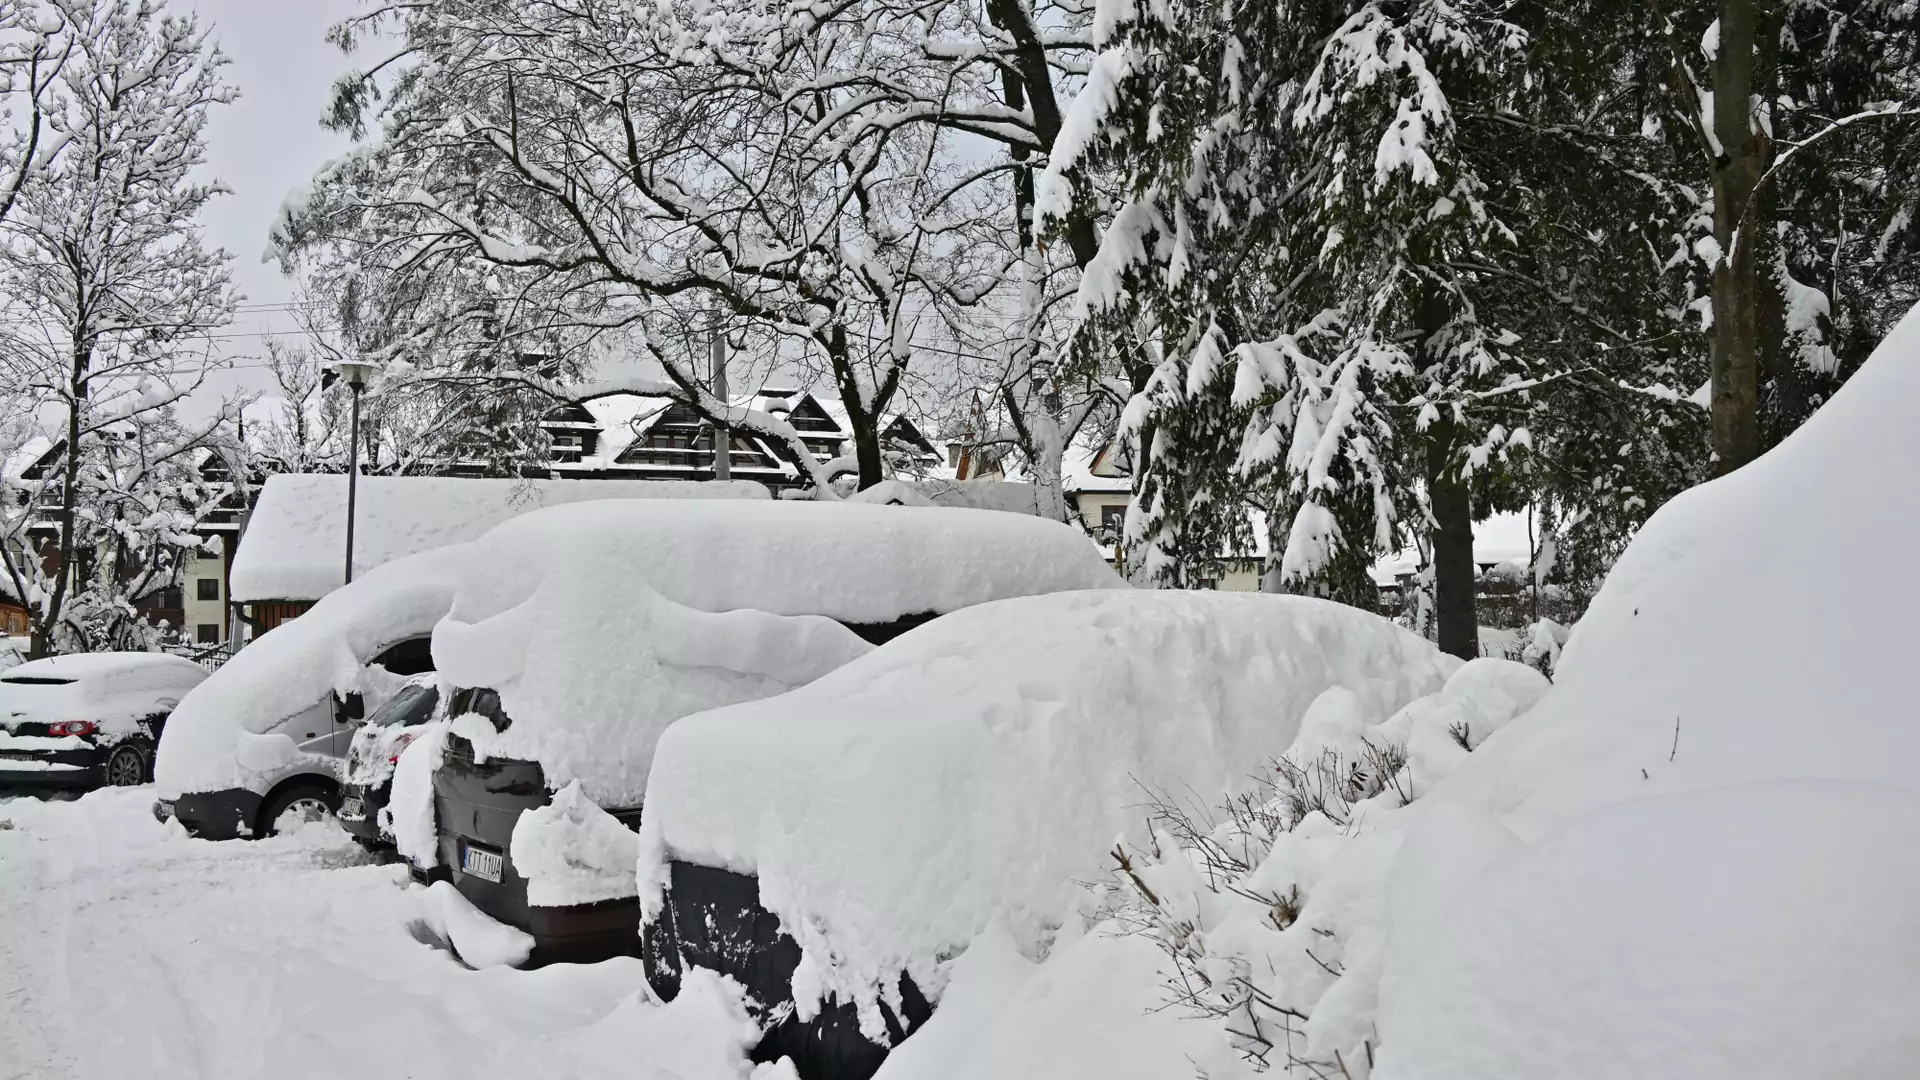 Paraliż w Zakopanem. Władze miasta wywiozą śnieg 